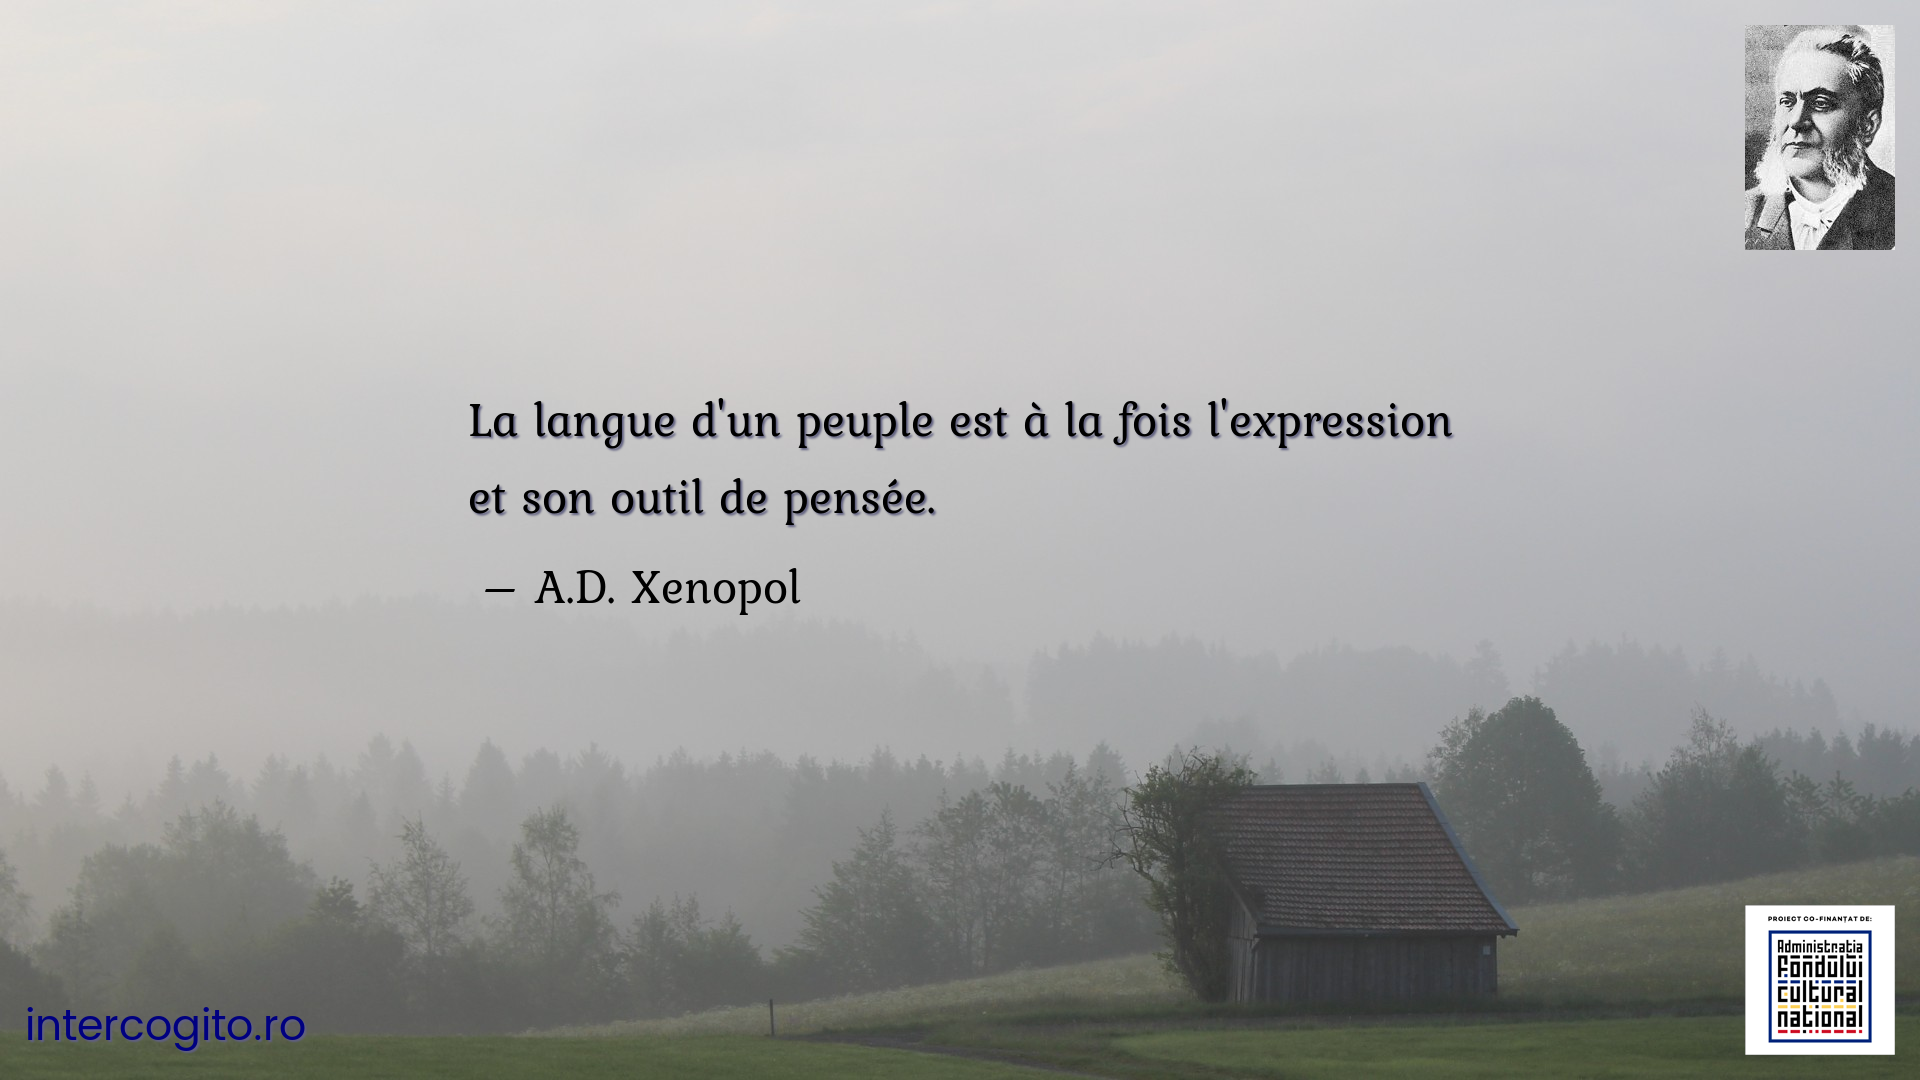 La langue d'un peuple est à la fois l'expression et son outil de pensée.